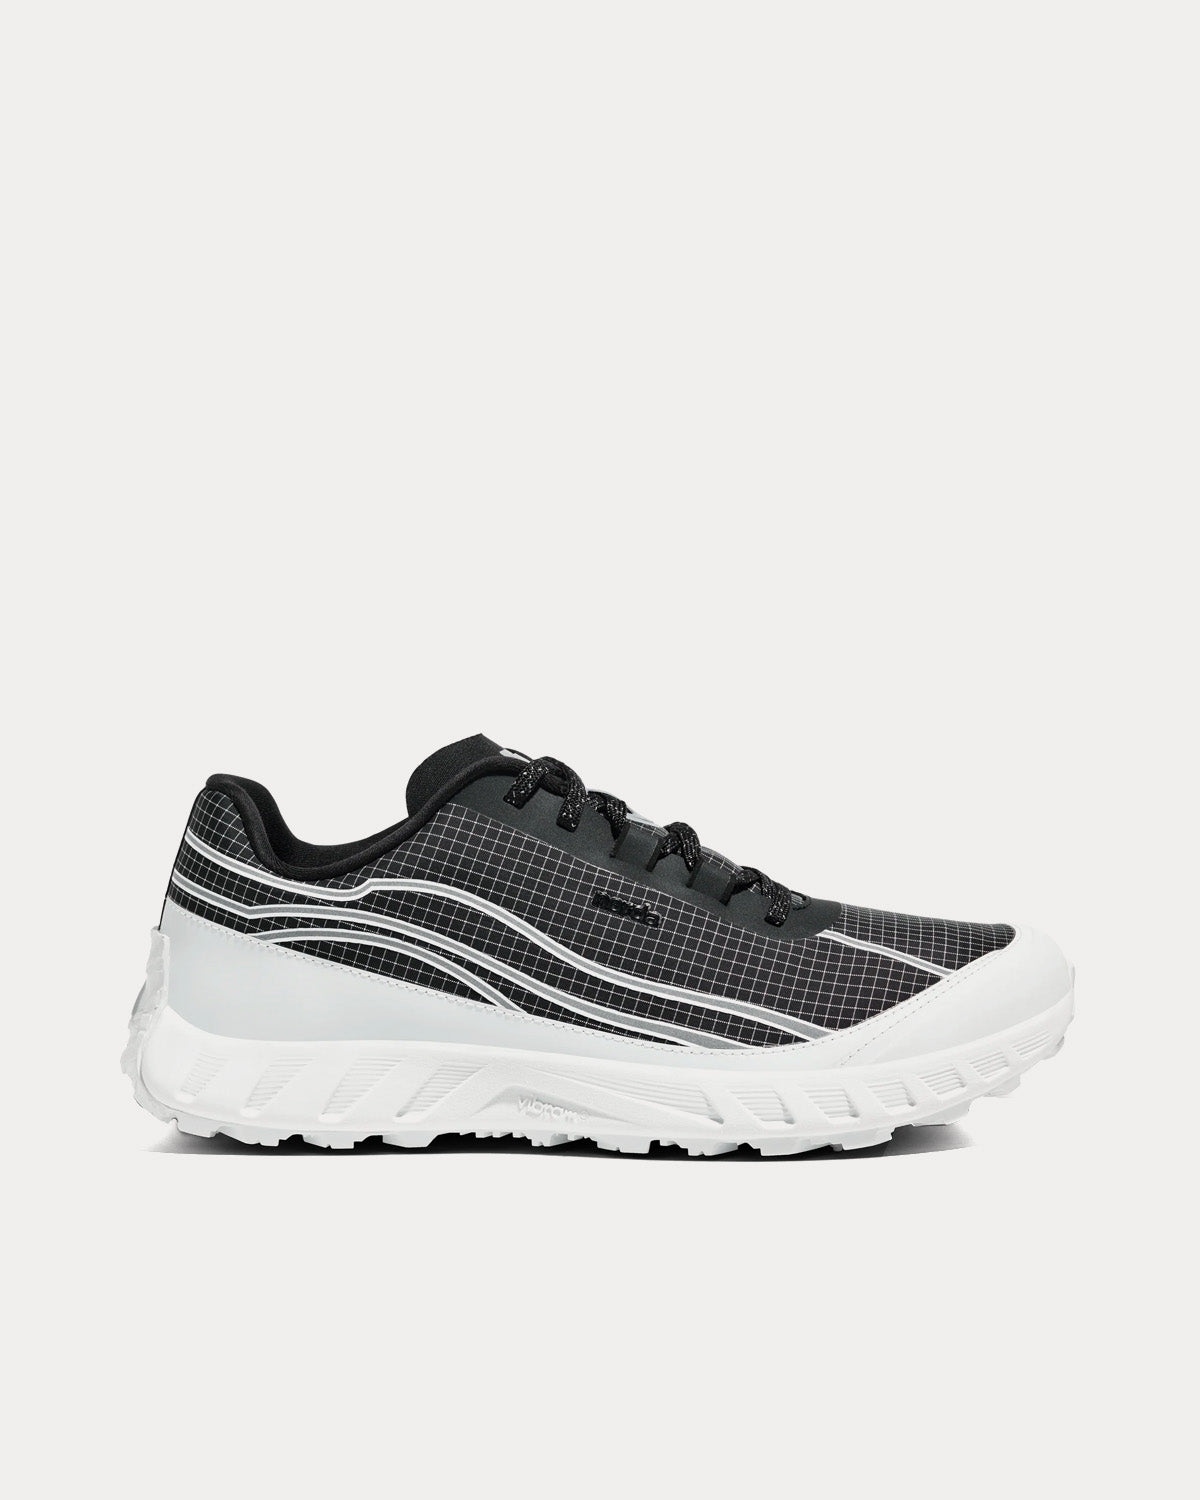 Norda - 002 Black / White Running Shoes